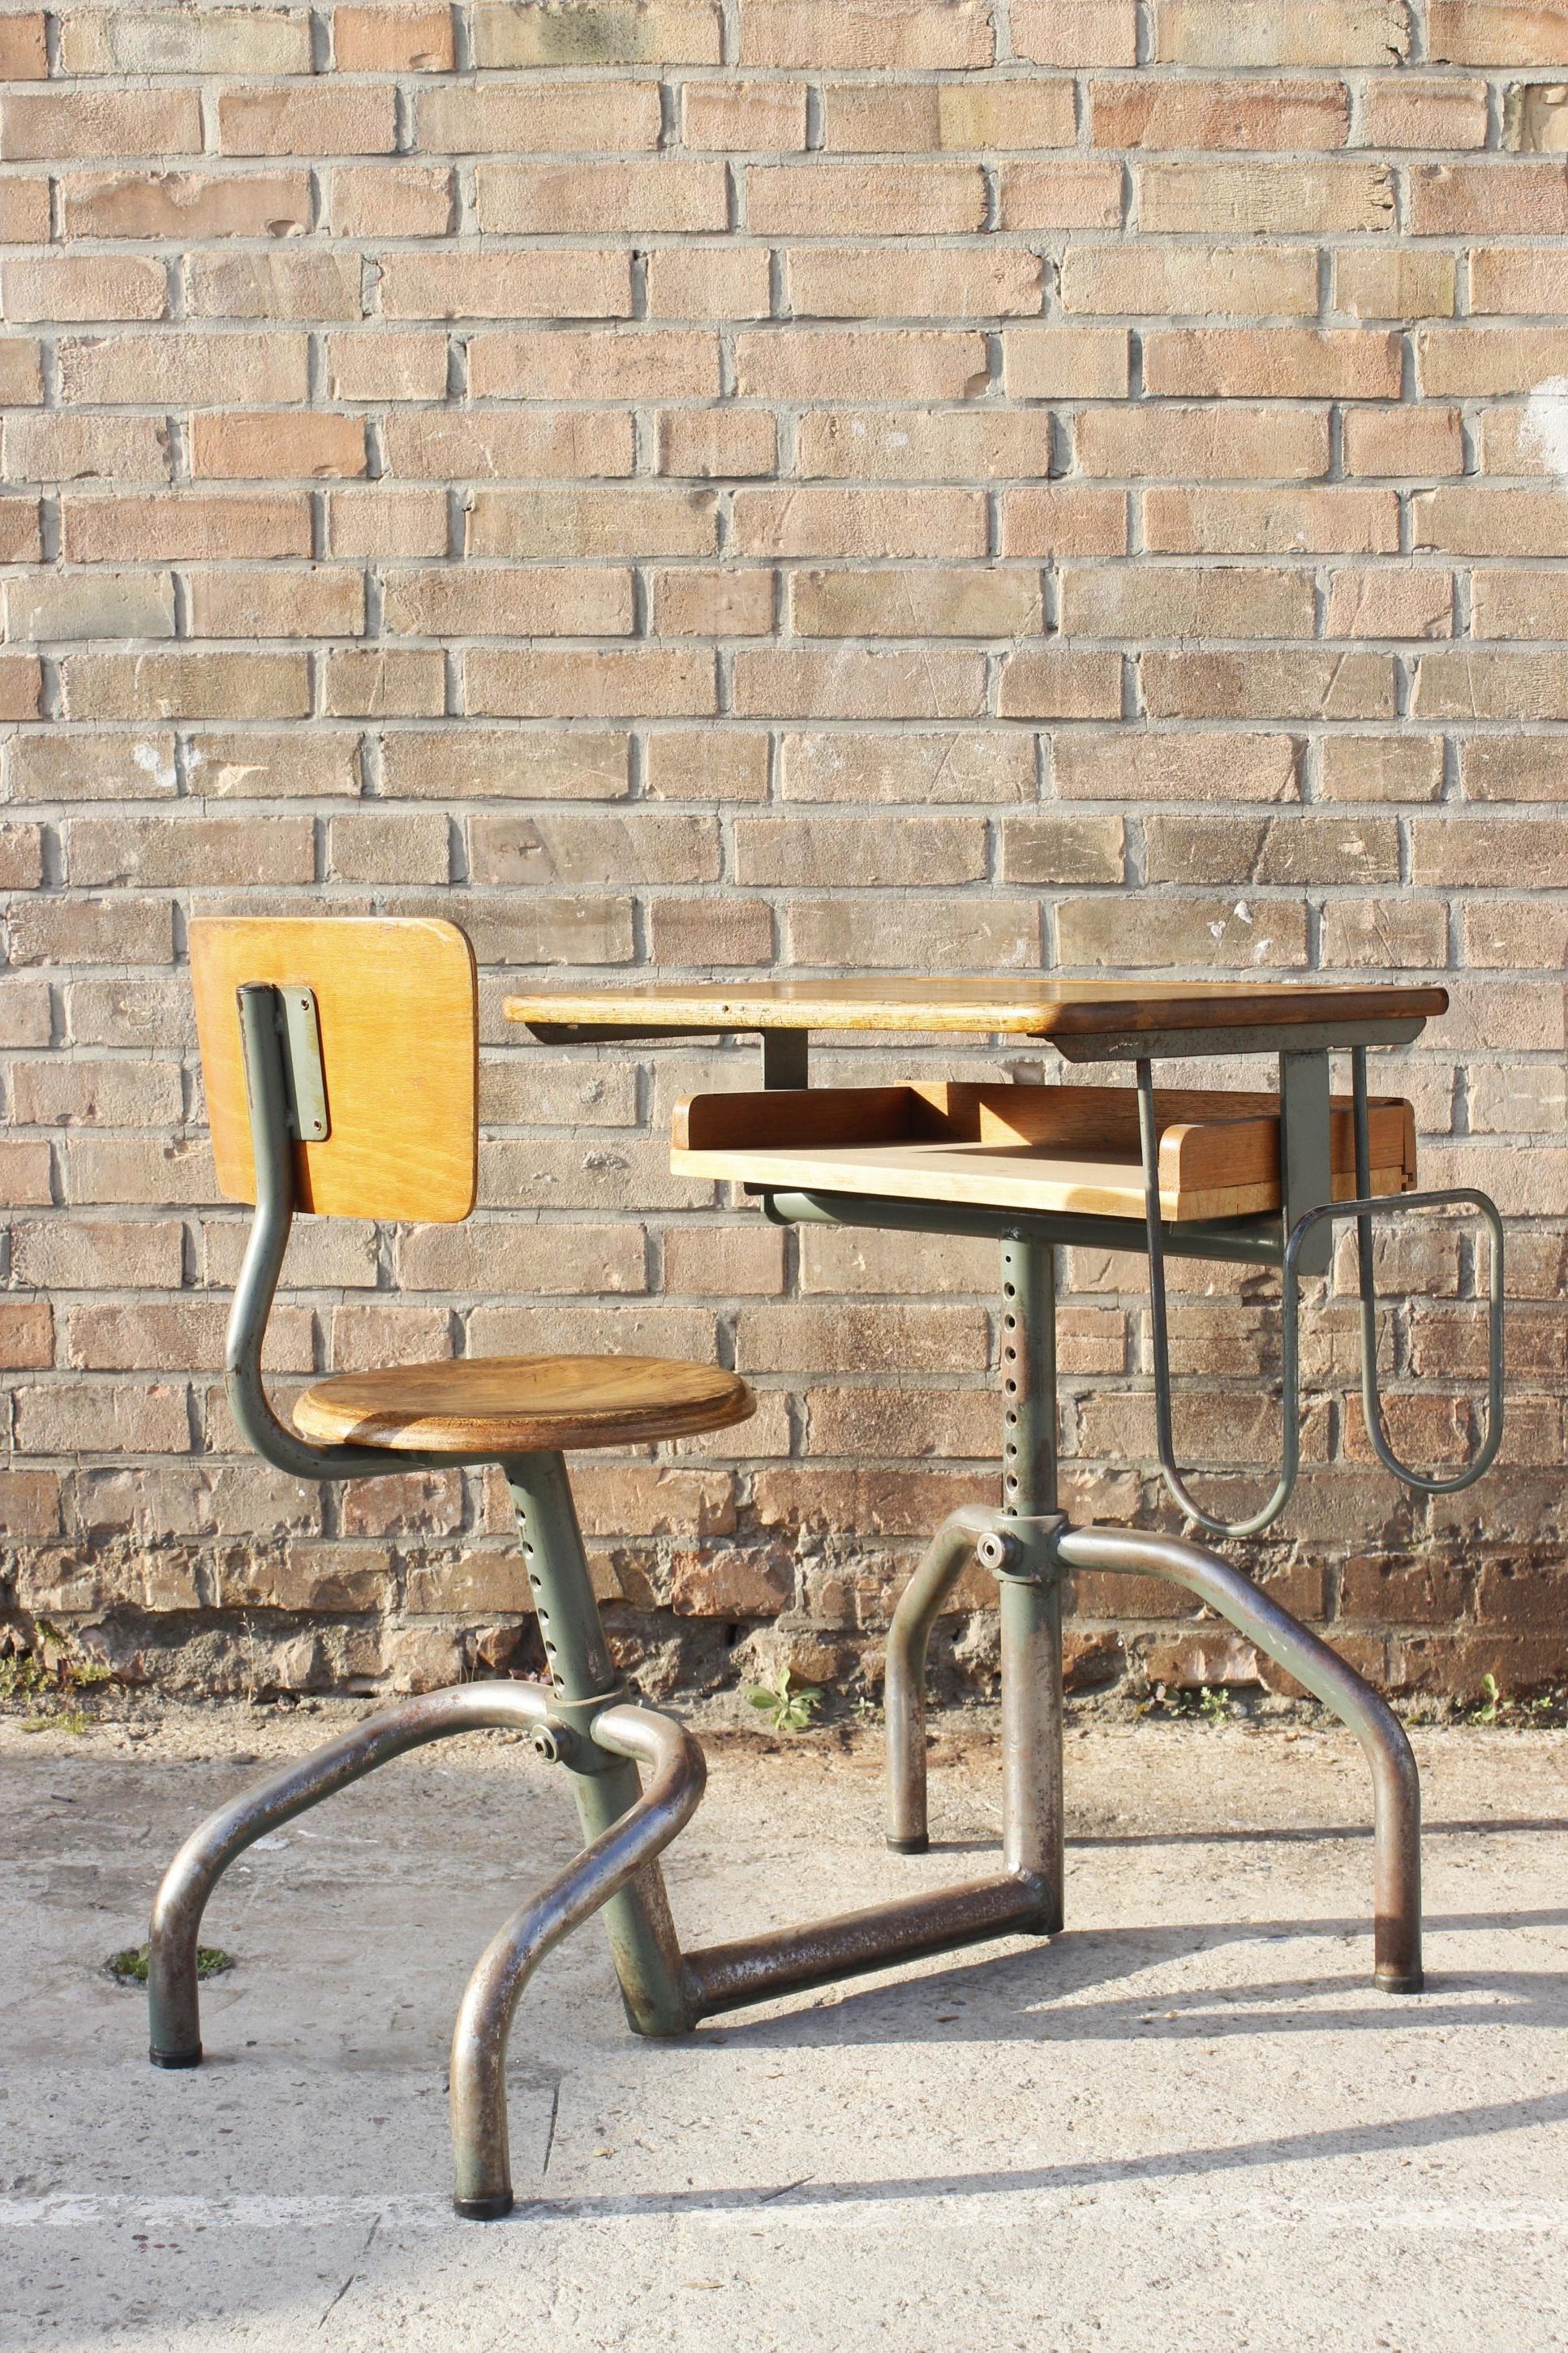 Anpassungsfähiger Schultisch, entworfen von Jacques Hitier, hergestellt von Mobilor France in den 1950er Jahren, oft fälschlicherweise Jean Prouvé zugeschrieben. 

Das Design ist typisch für die Produktion der französischen Wiederaufbauzeit nach dem